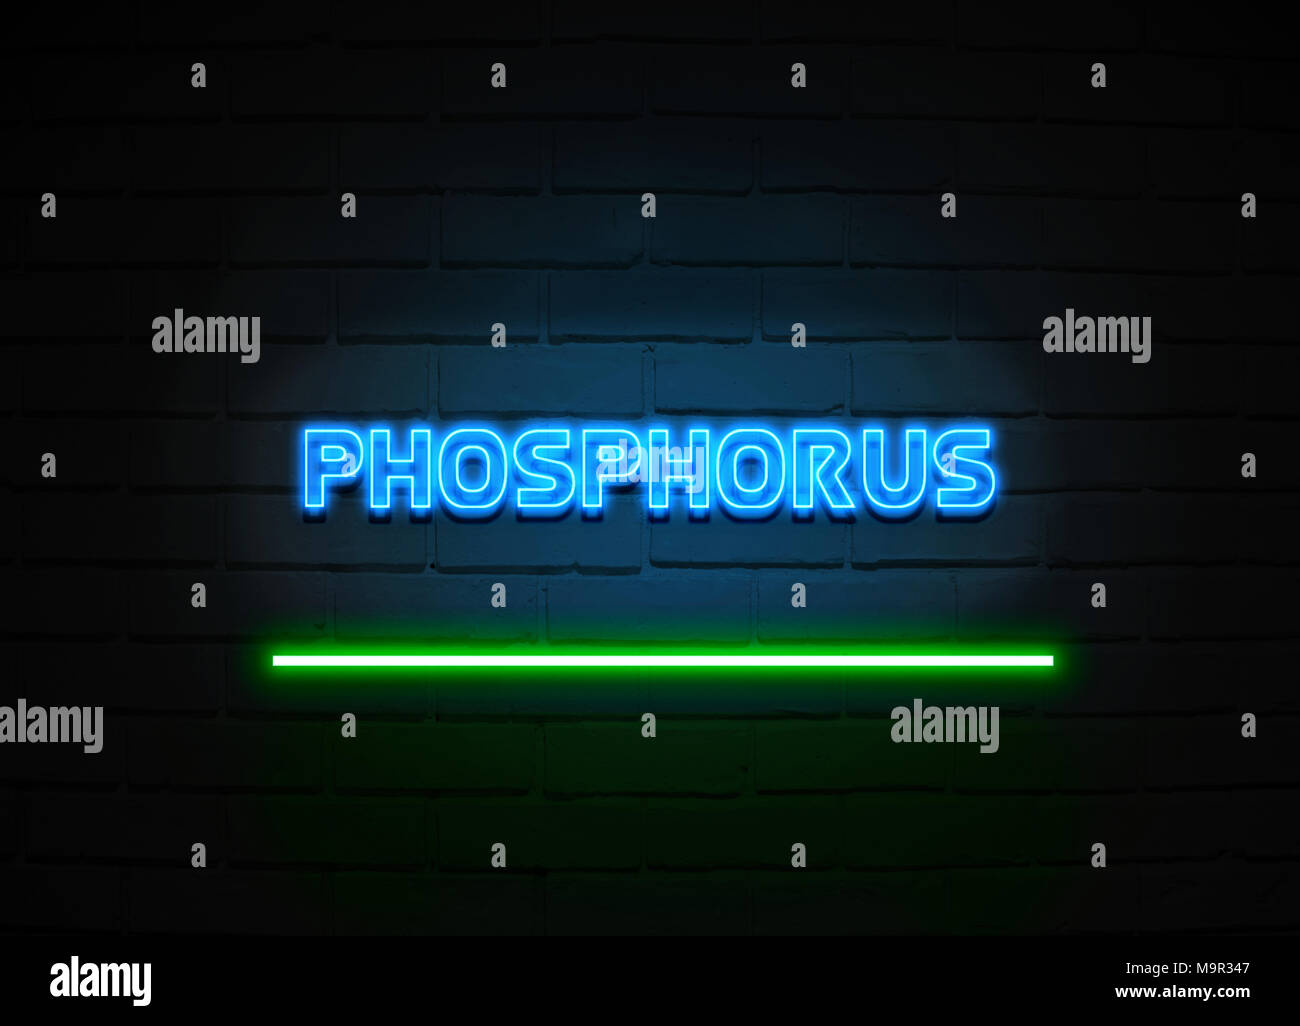 Phosphor Leuchtreklame - glühende Leuchtreklame auf brickwall Wand - 3D-Royalty Free Stock Illustration dargestellt. Stockfoto